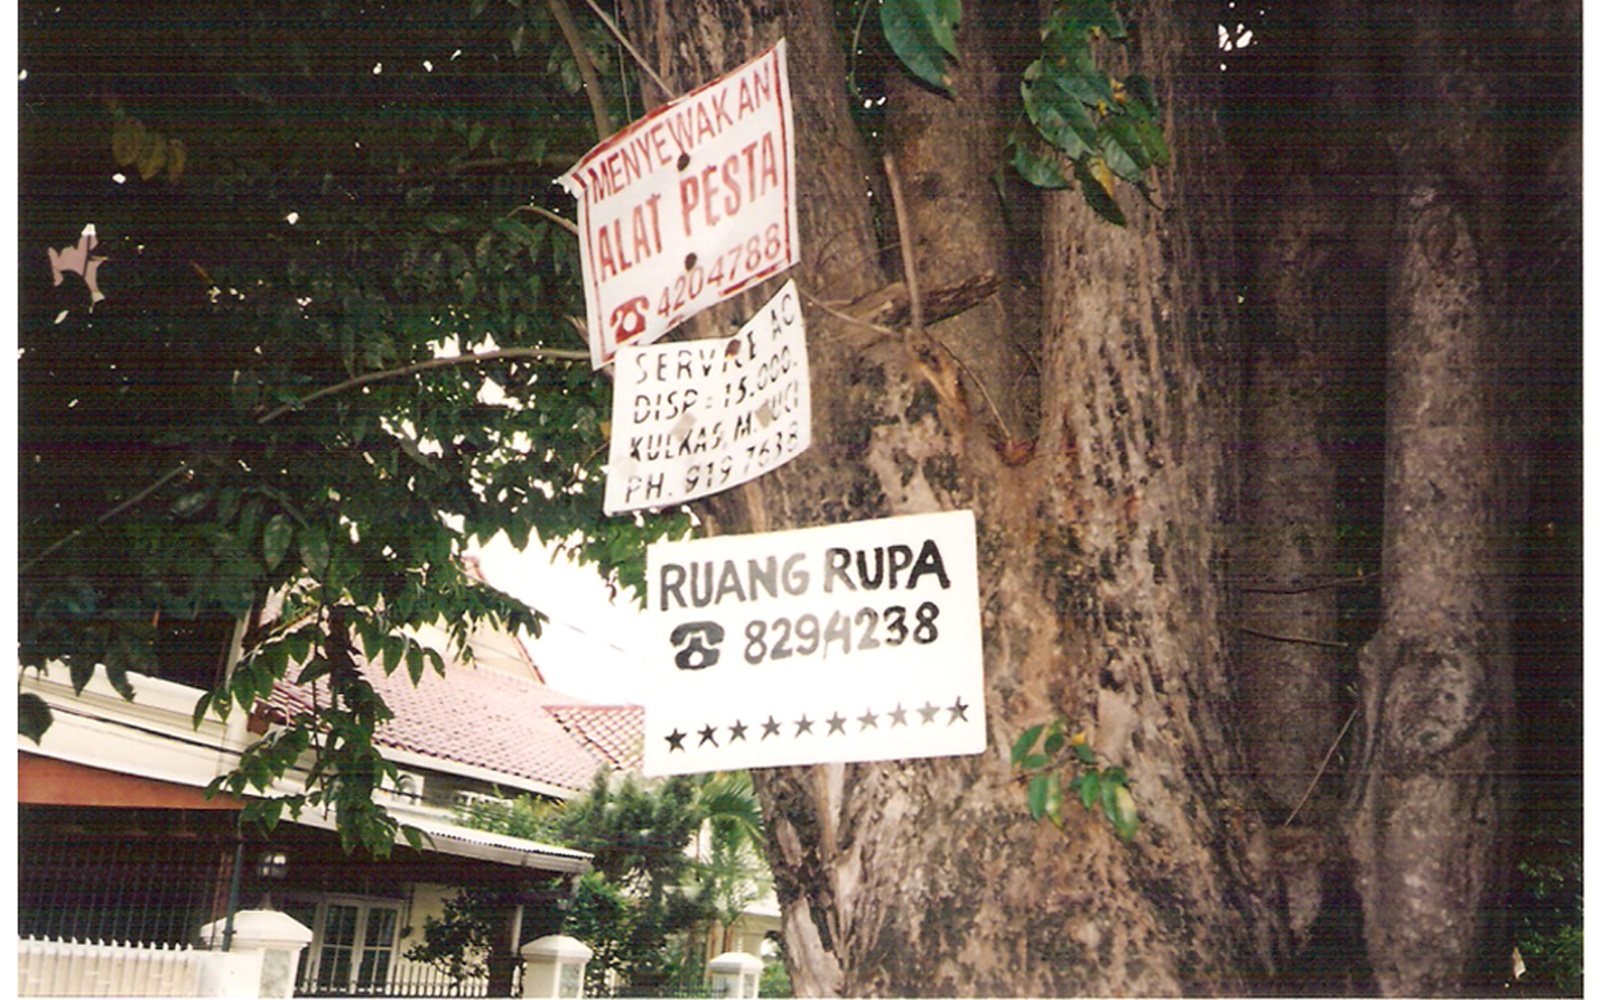 Das Bild zeigt ein Schild mit dem Aufdruck ruangrupa, dass an einem Baum hängt.